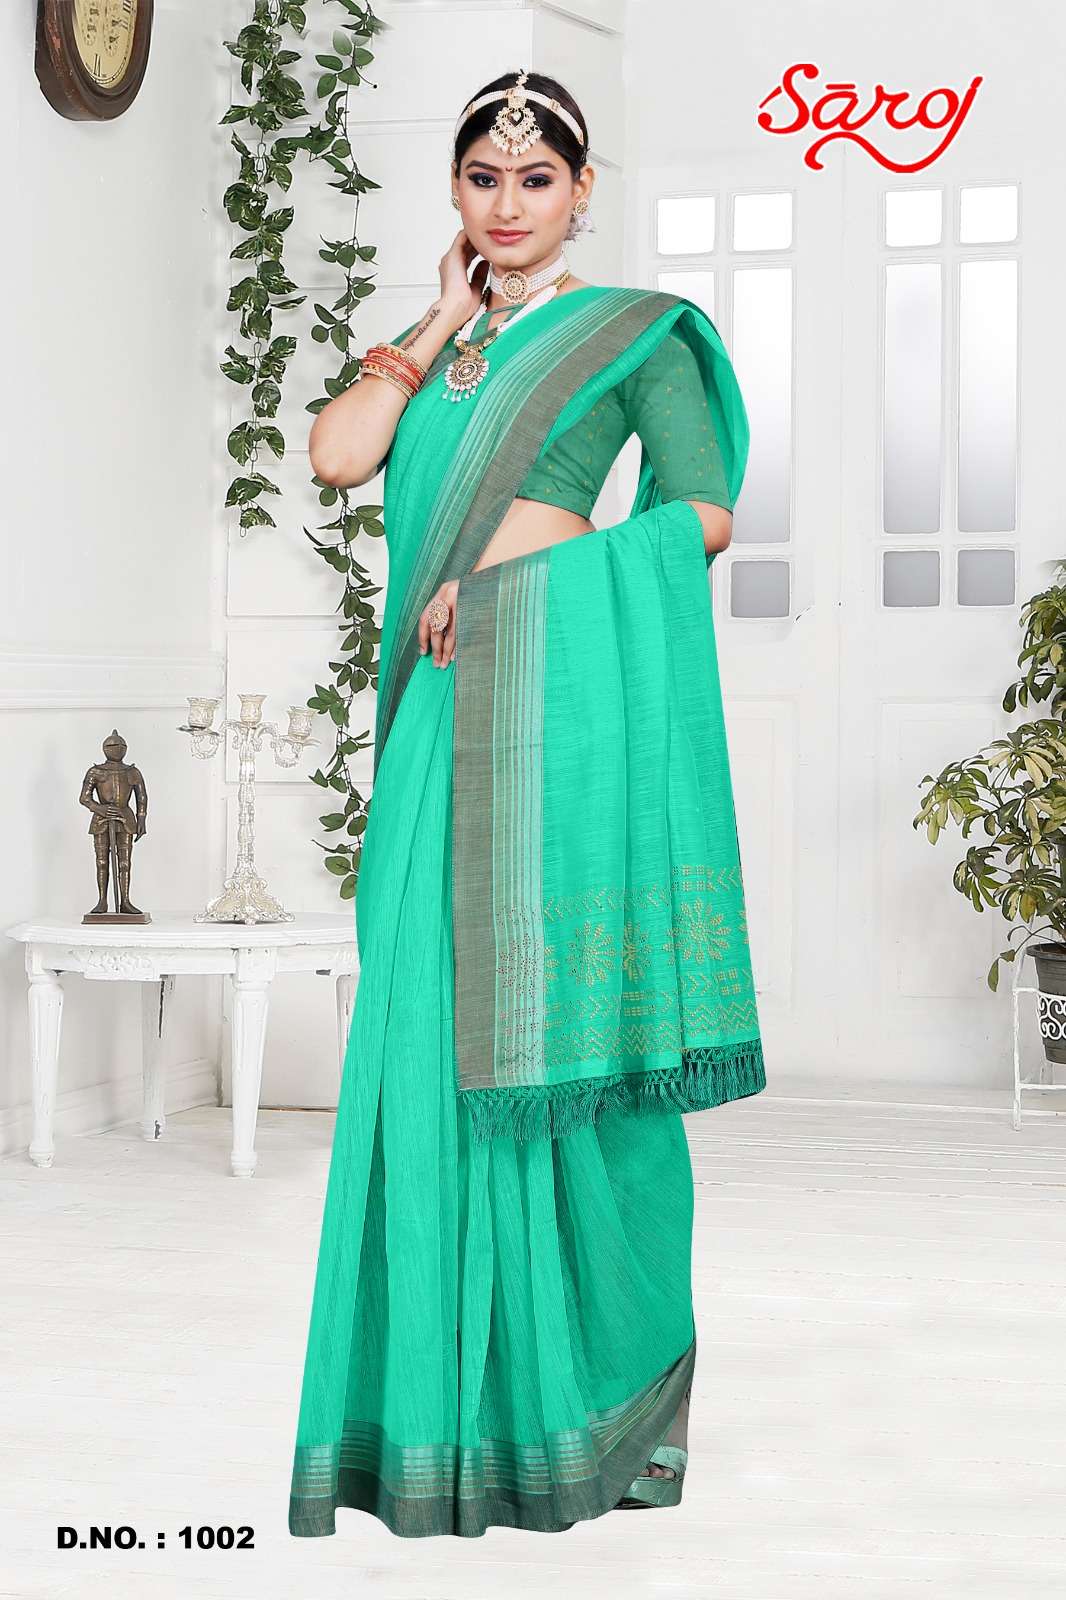 Saroj textile presents Mahotsav vol-4 cotton sarees catalogue